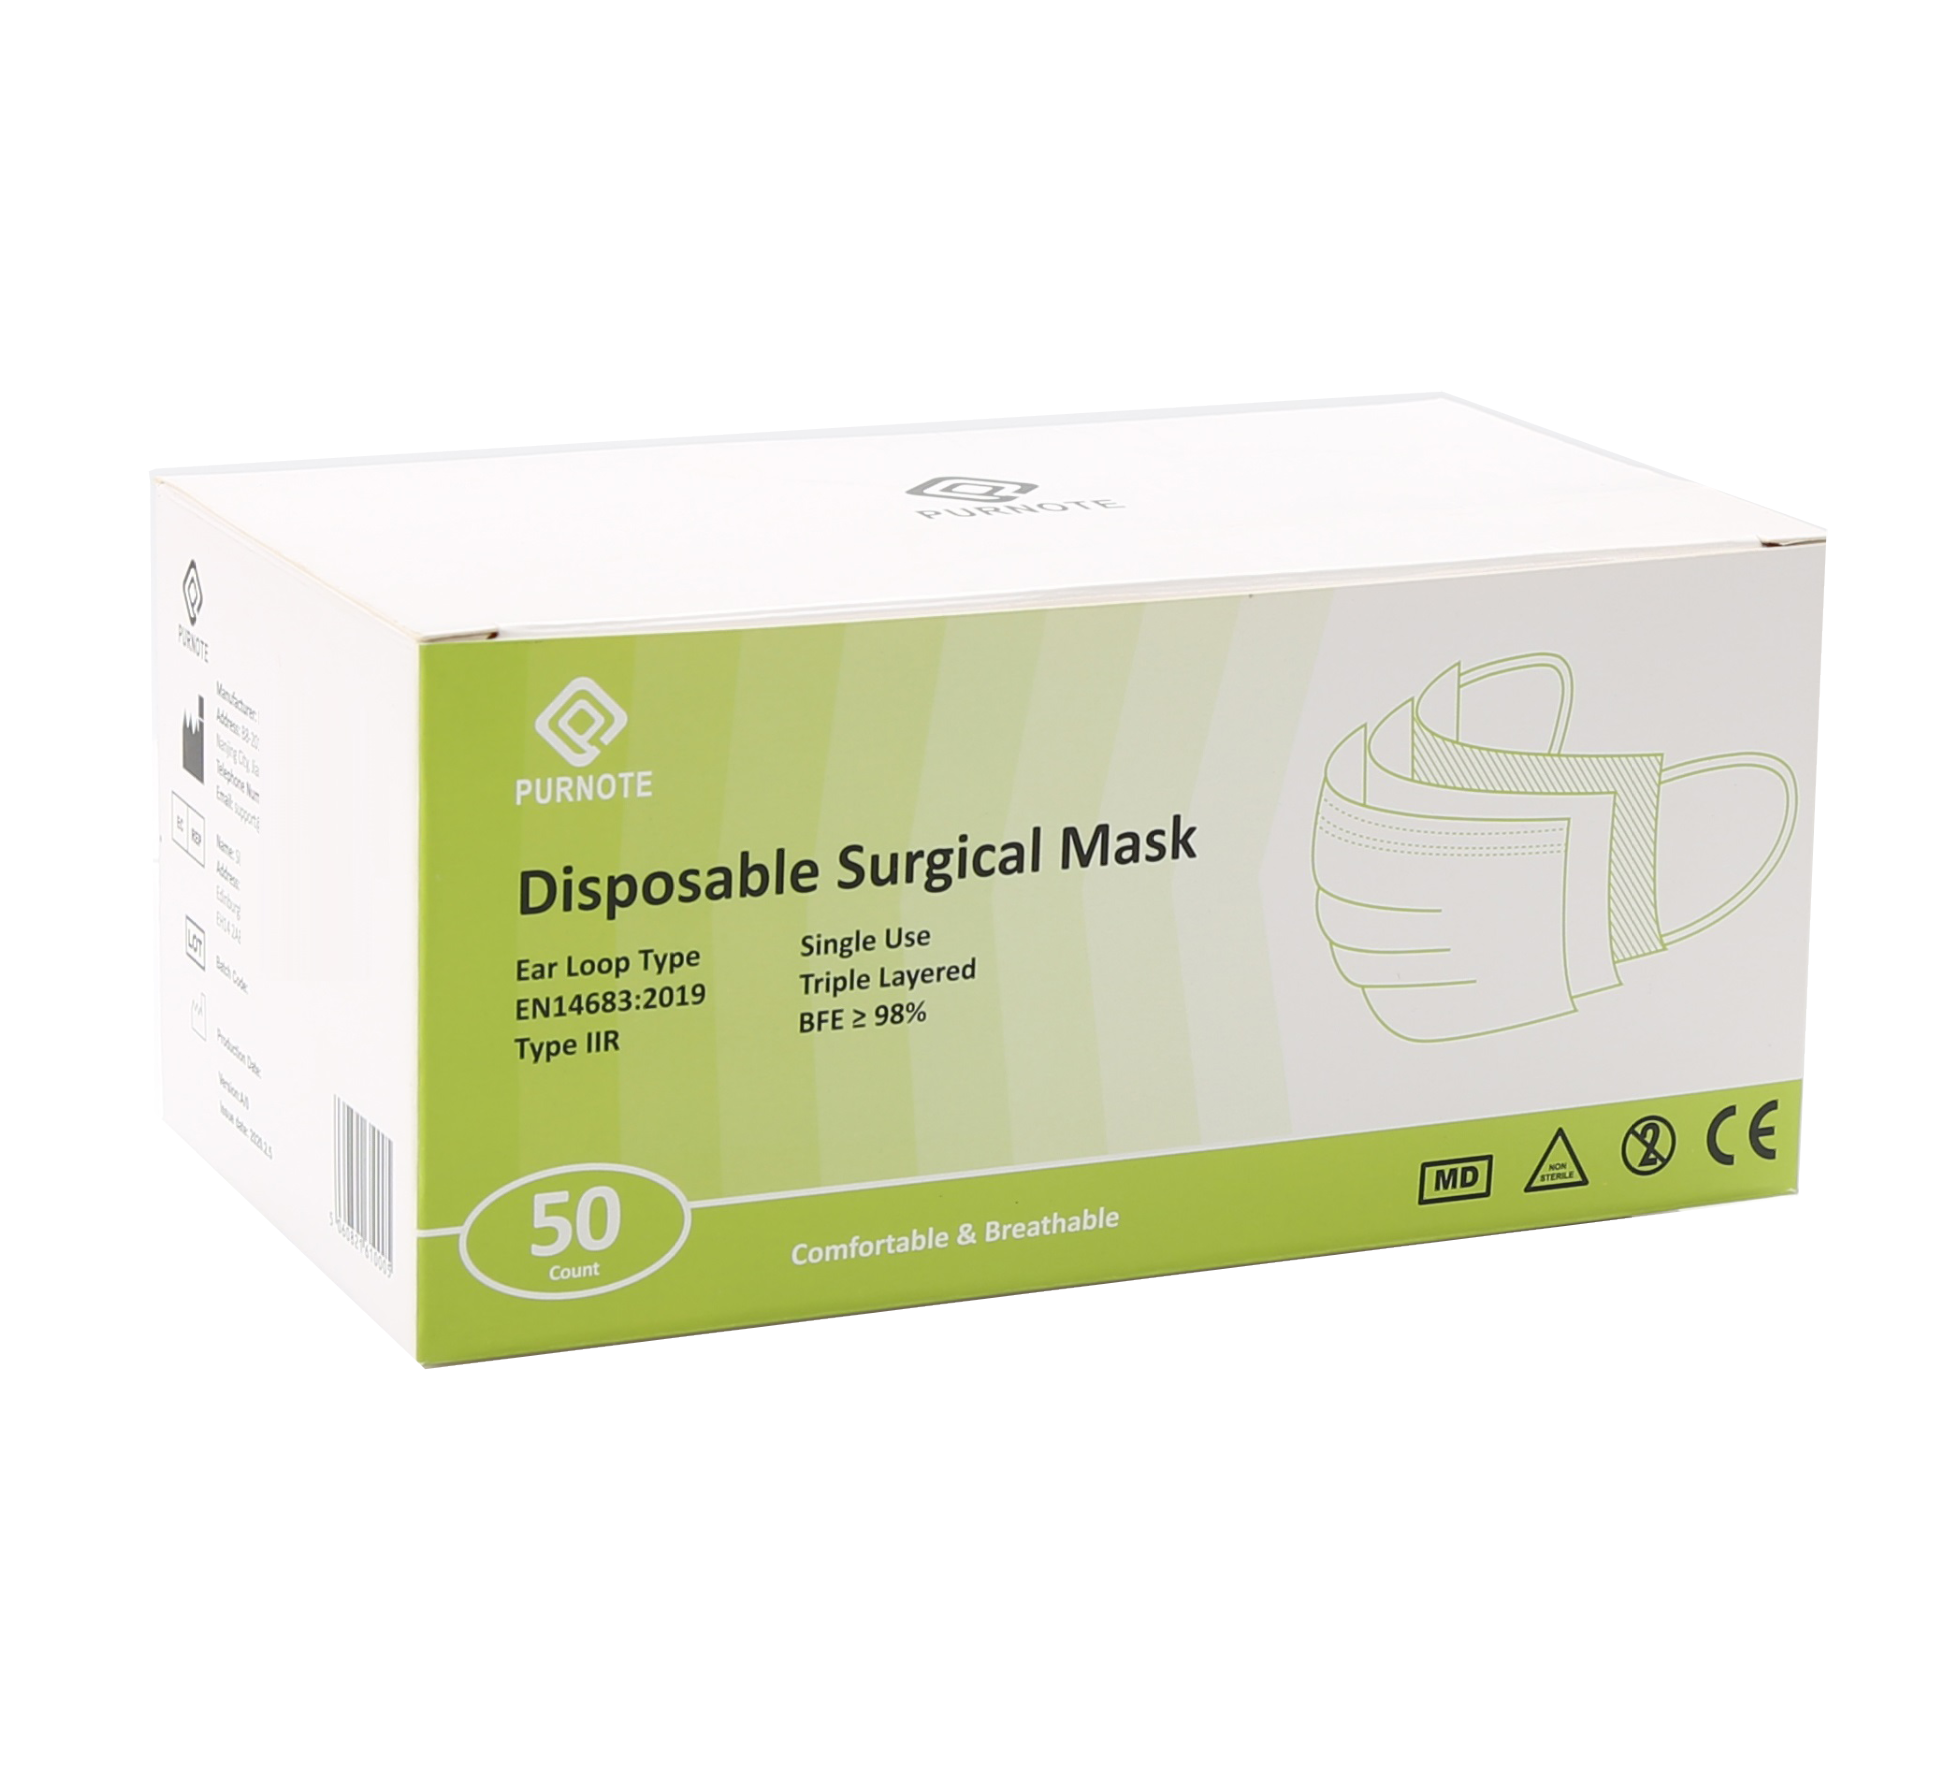 Medical face masks